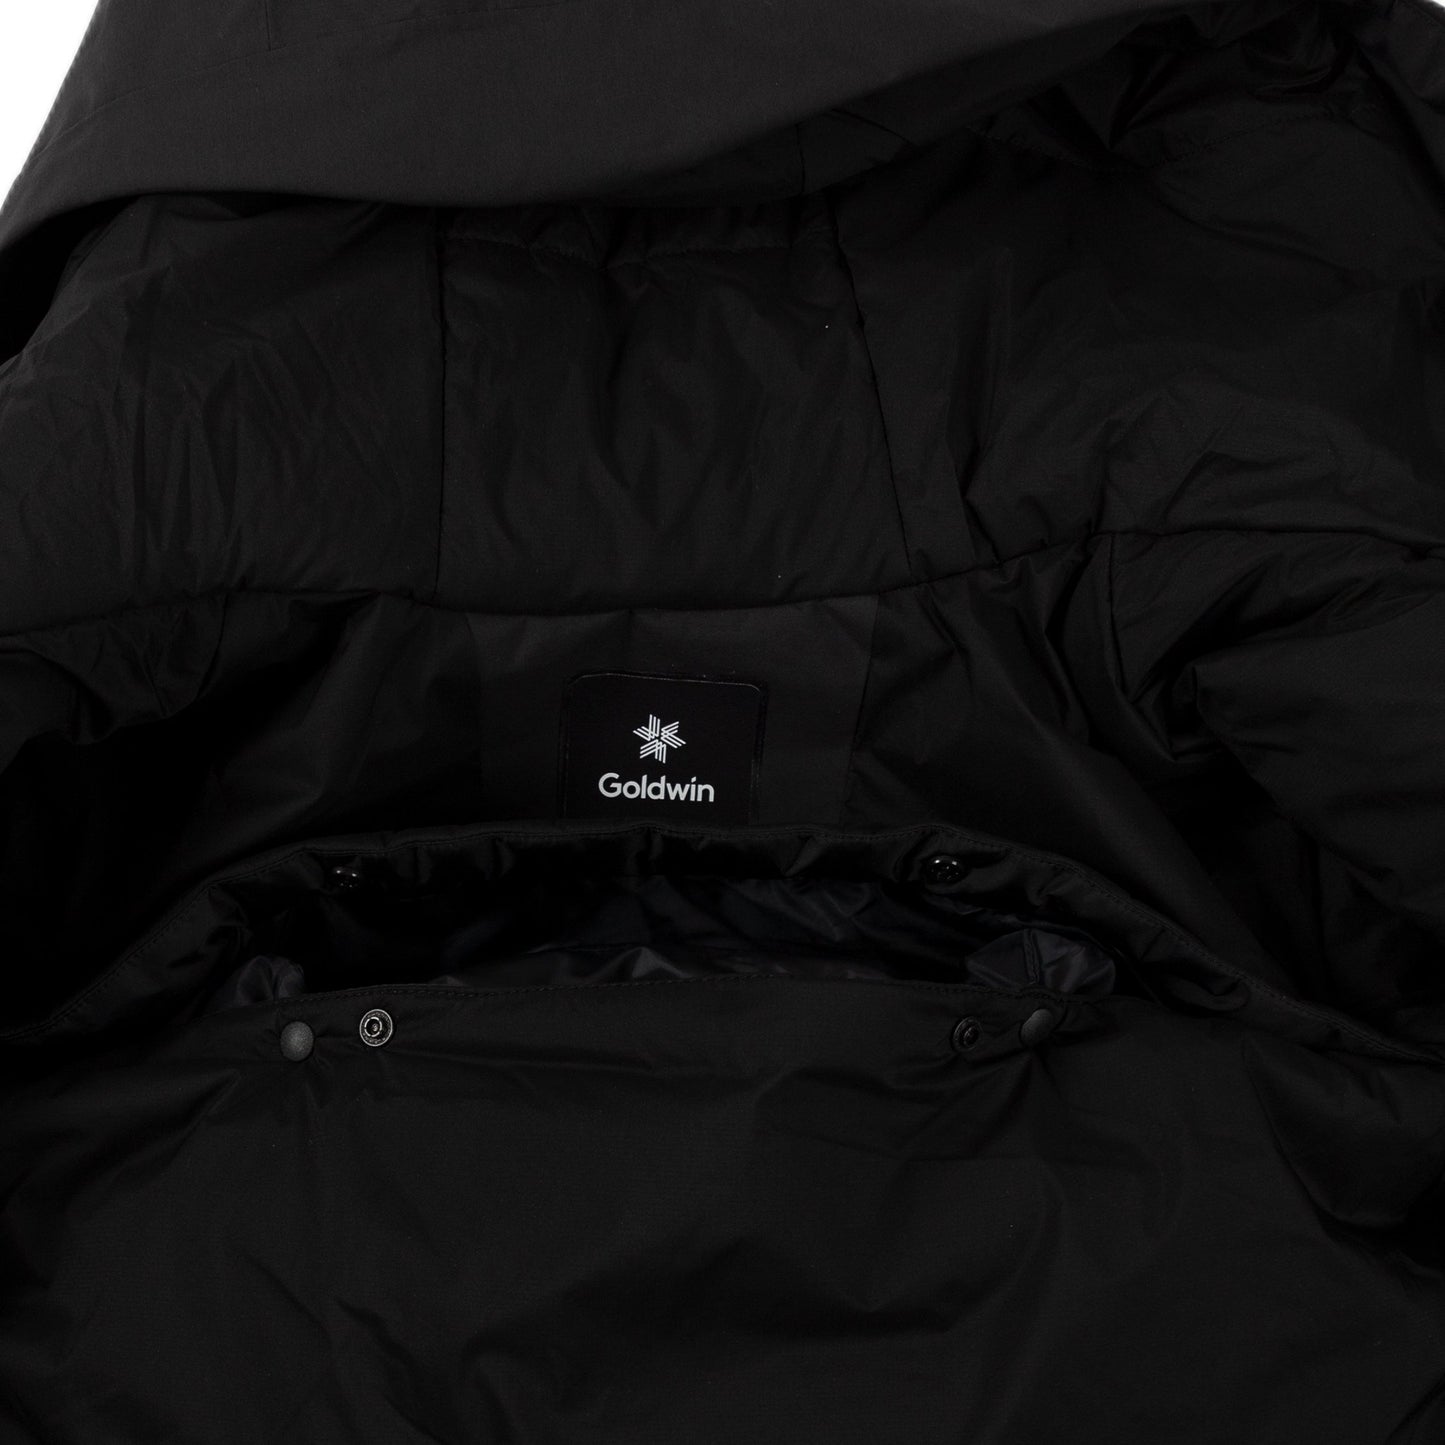 Goldwin Insulation Mountain Parka in Black hooded jacket sportswear all weather rain gear lining